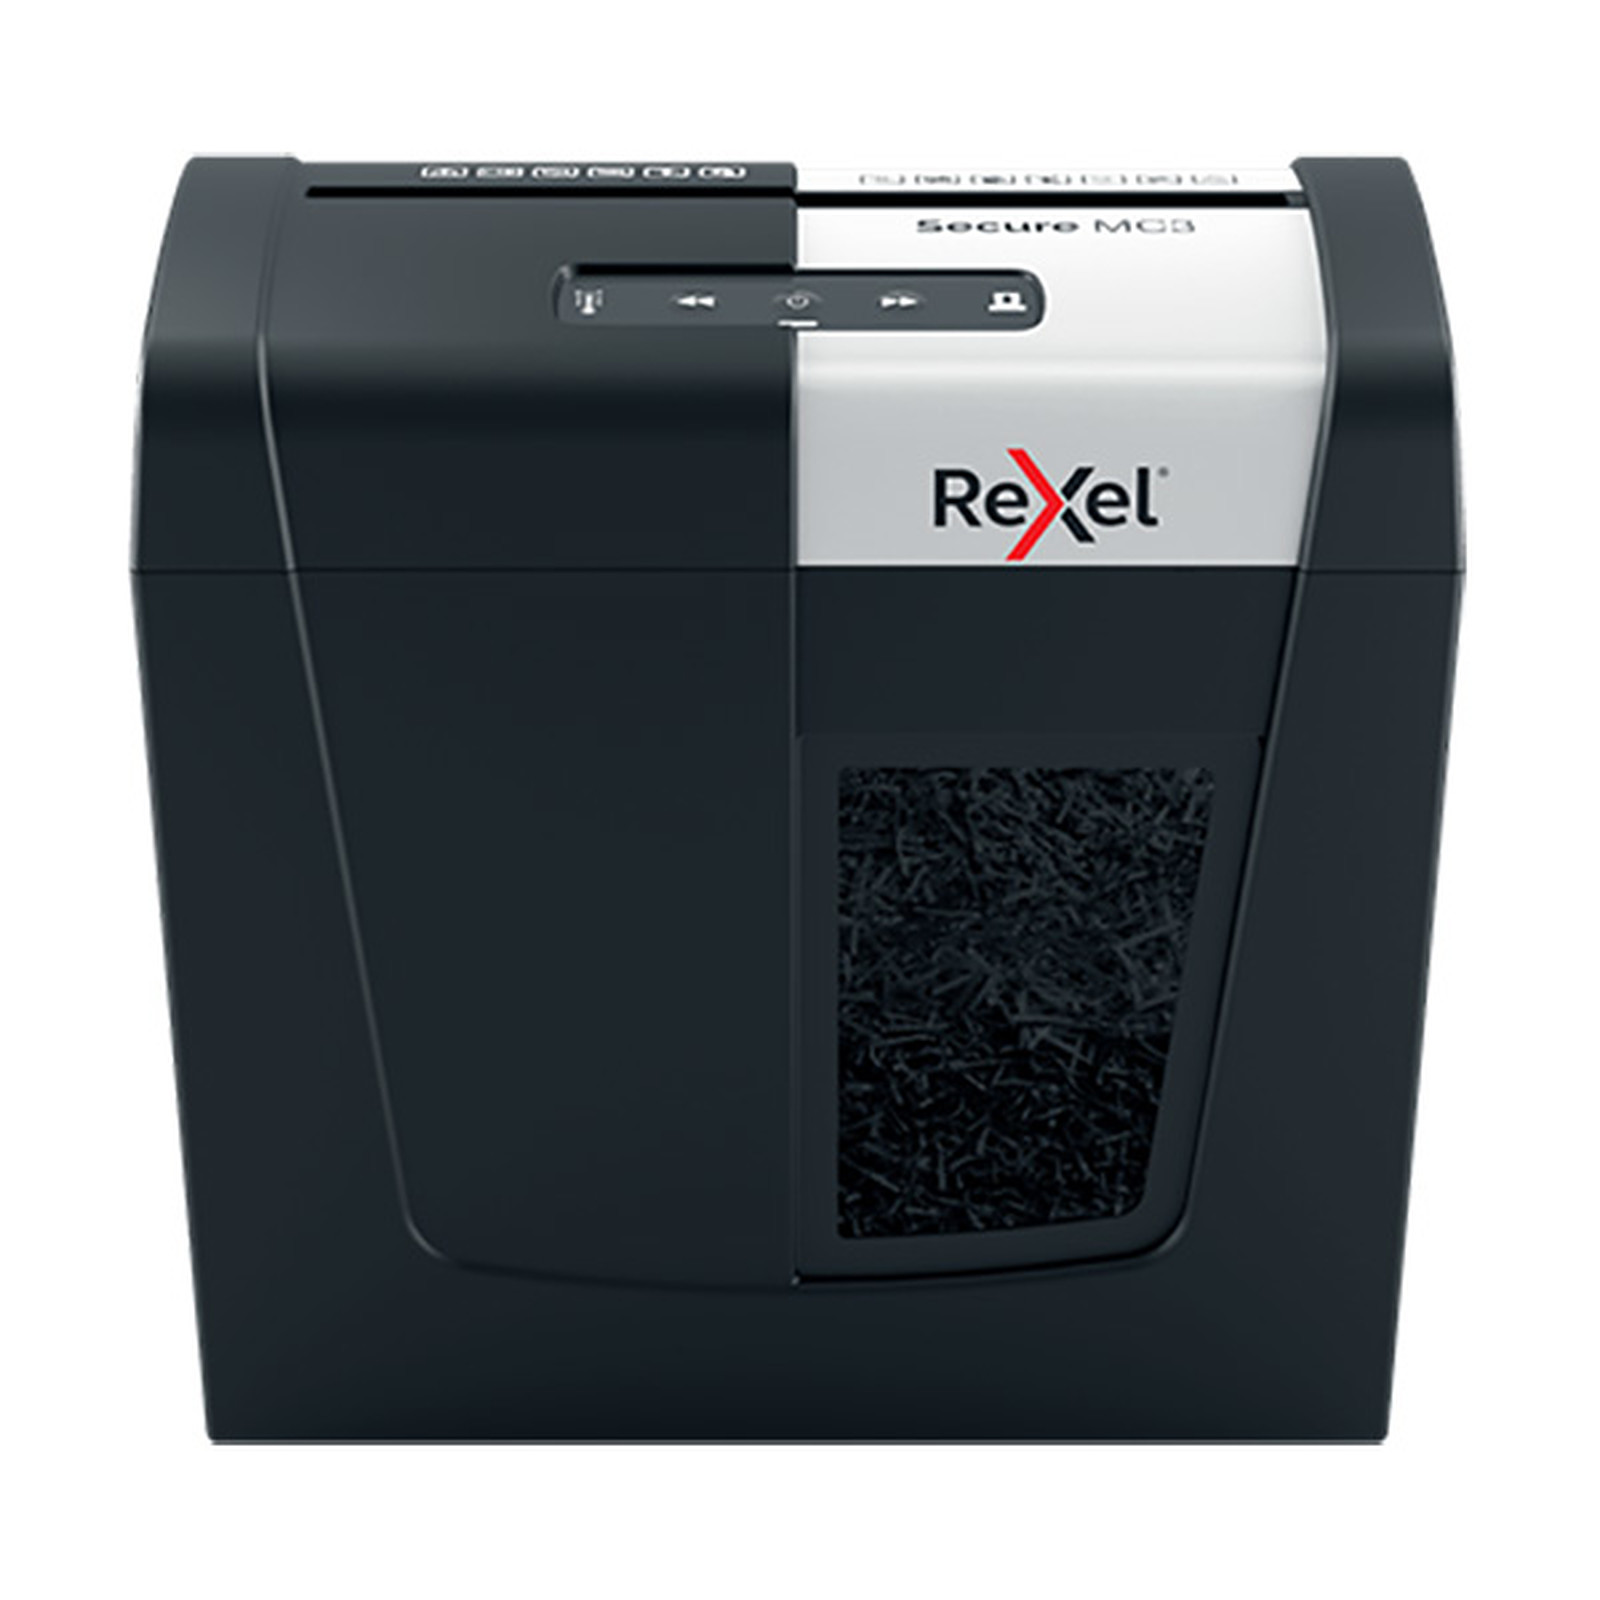 Rexel Destructeur Secure MC3 coupe micro - Destructeur de documents Rexel